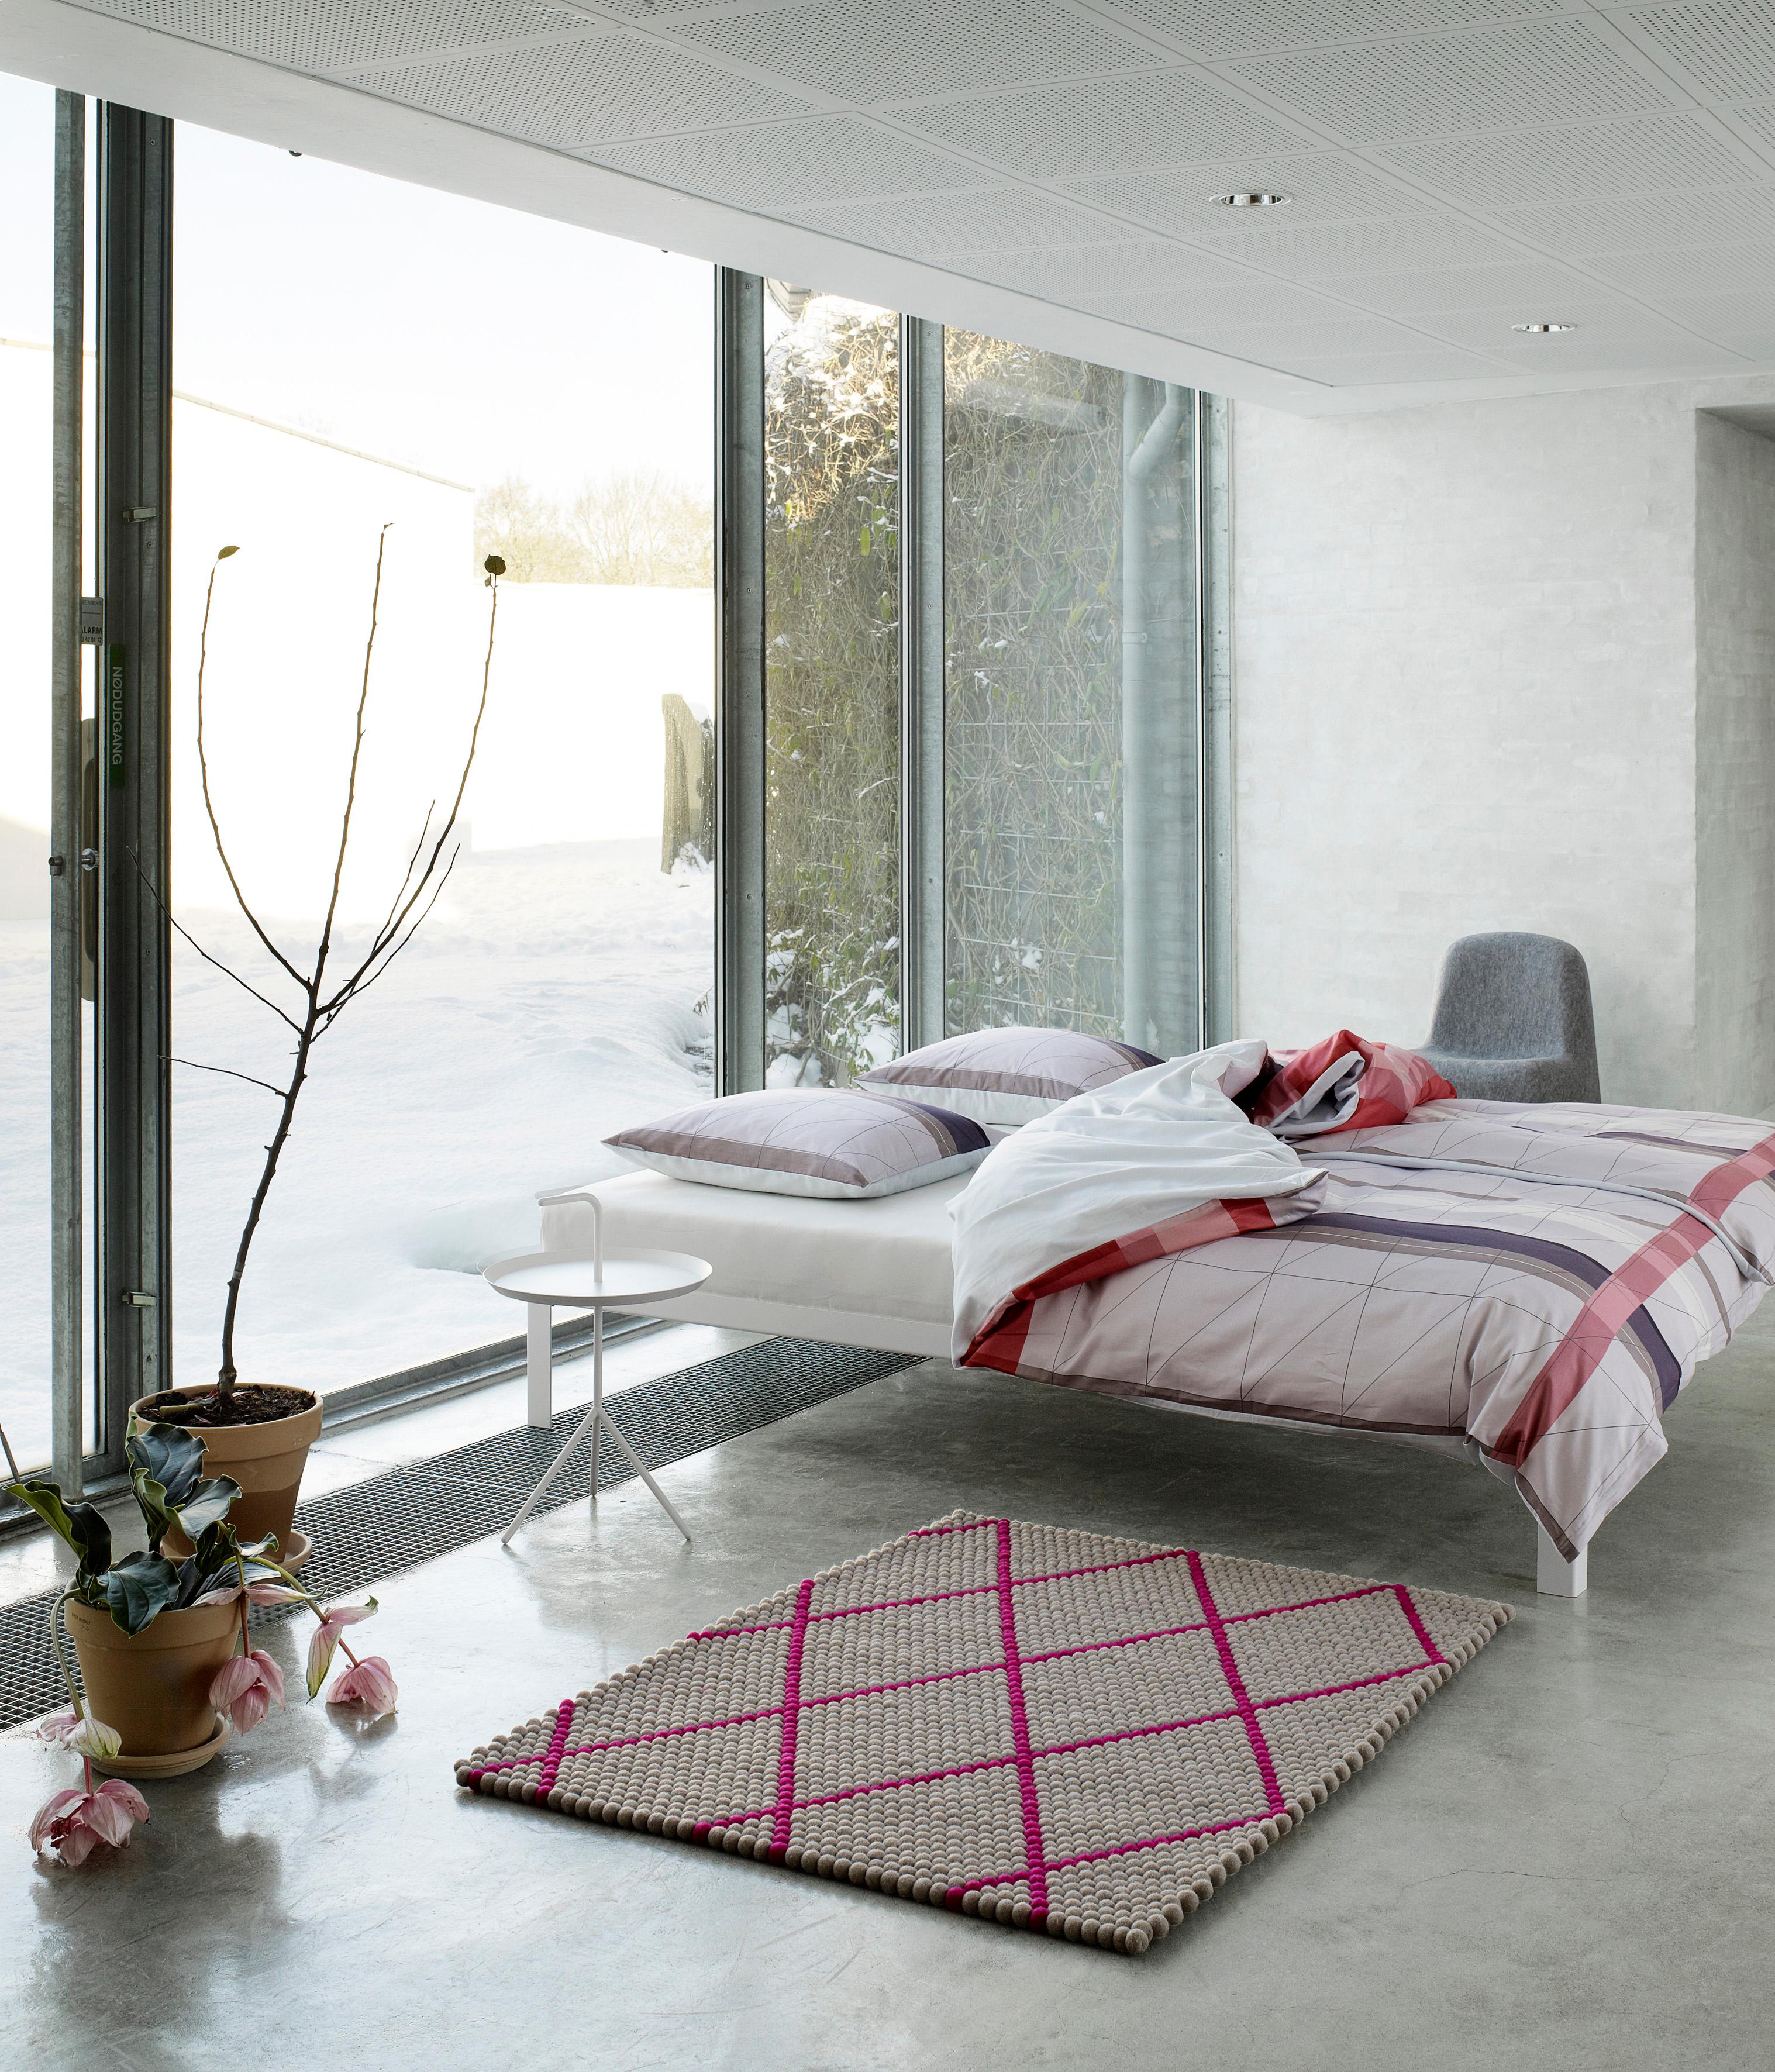 Modernes Schlafzimmer #fensterfront #beistelltisch #bett #teppich #bettwäsche #buntebettwäsche ©Hay